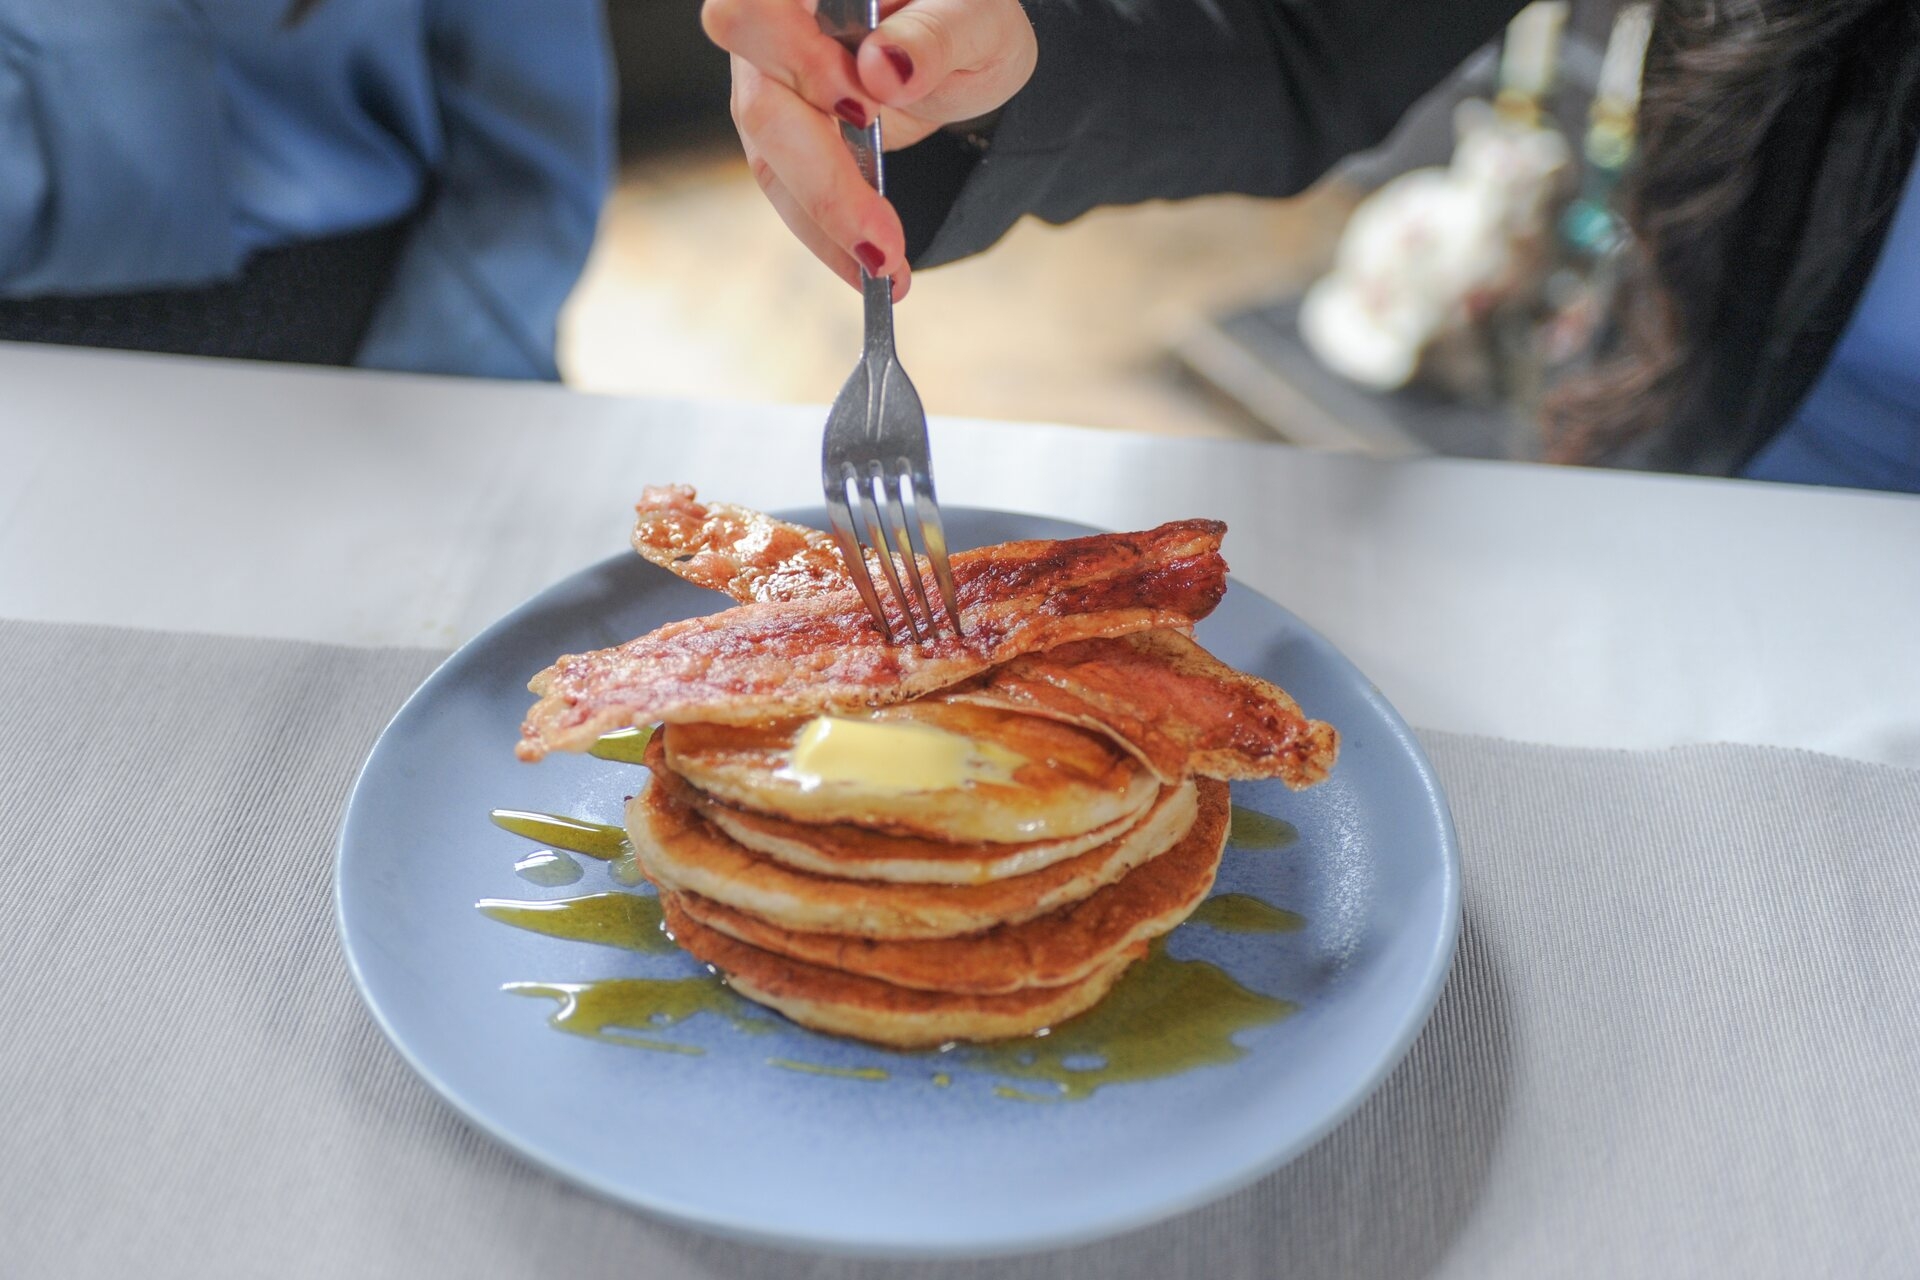 Odlat kött: även bacon och pannkakor, "måsten" av den amerikanska frukosten, kan hamna på bordet tack vare cellkultur